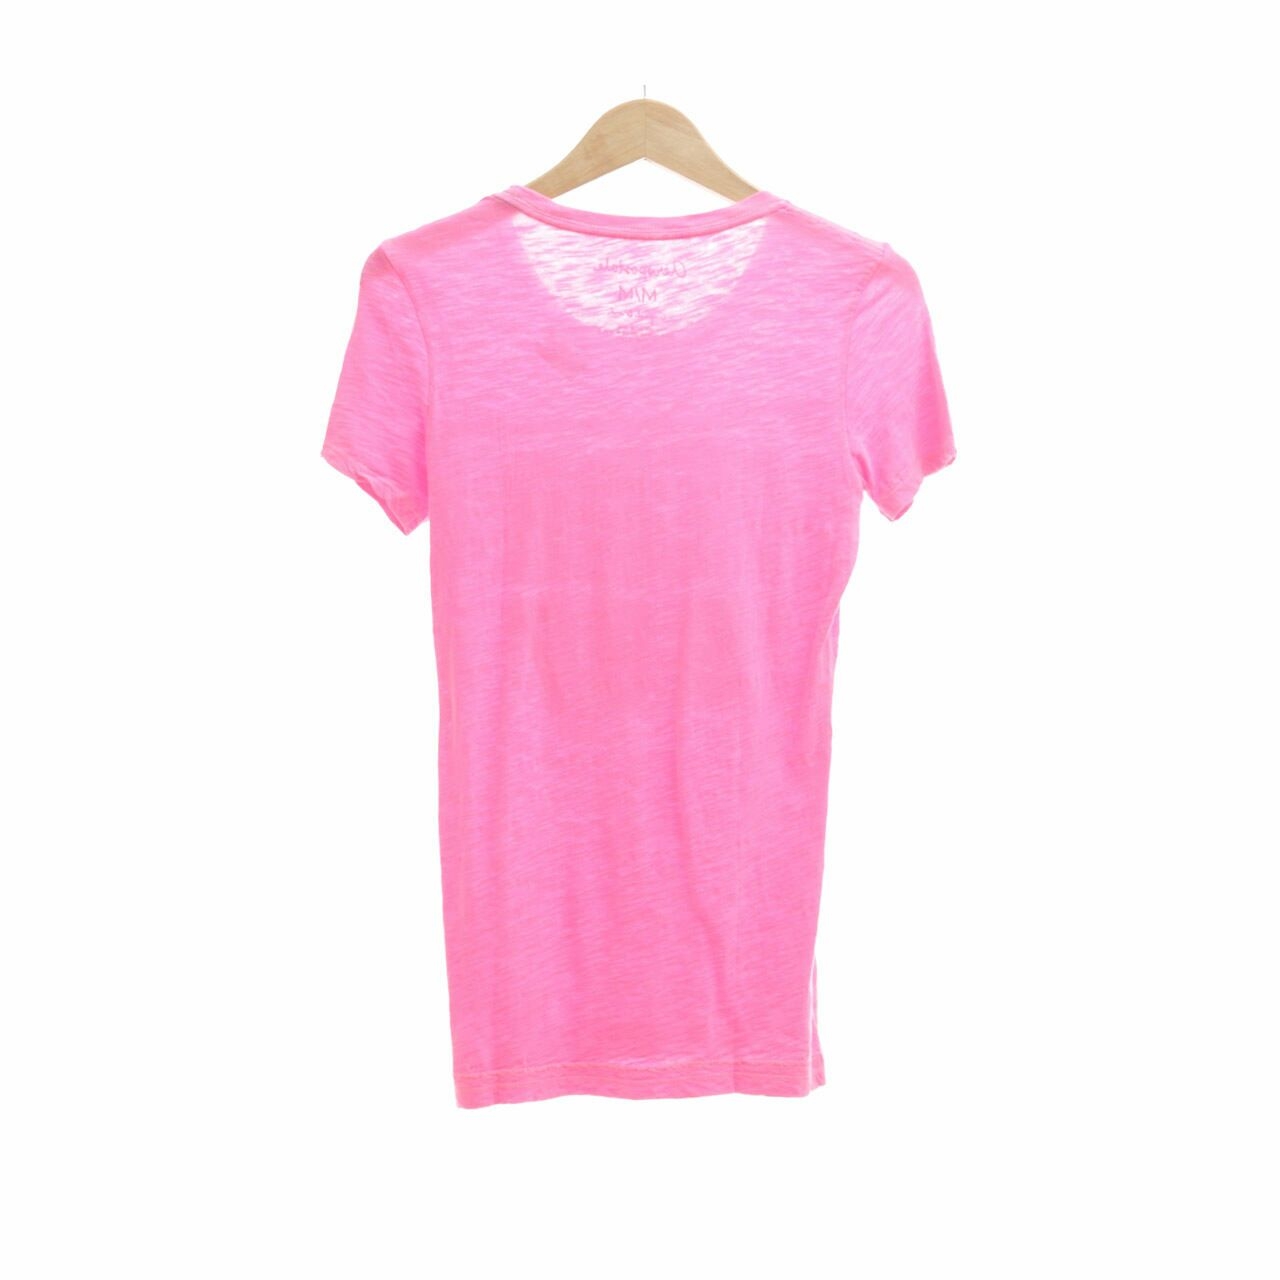 Aeropostale Pink T-Shirt